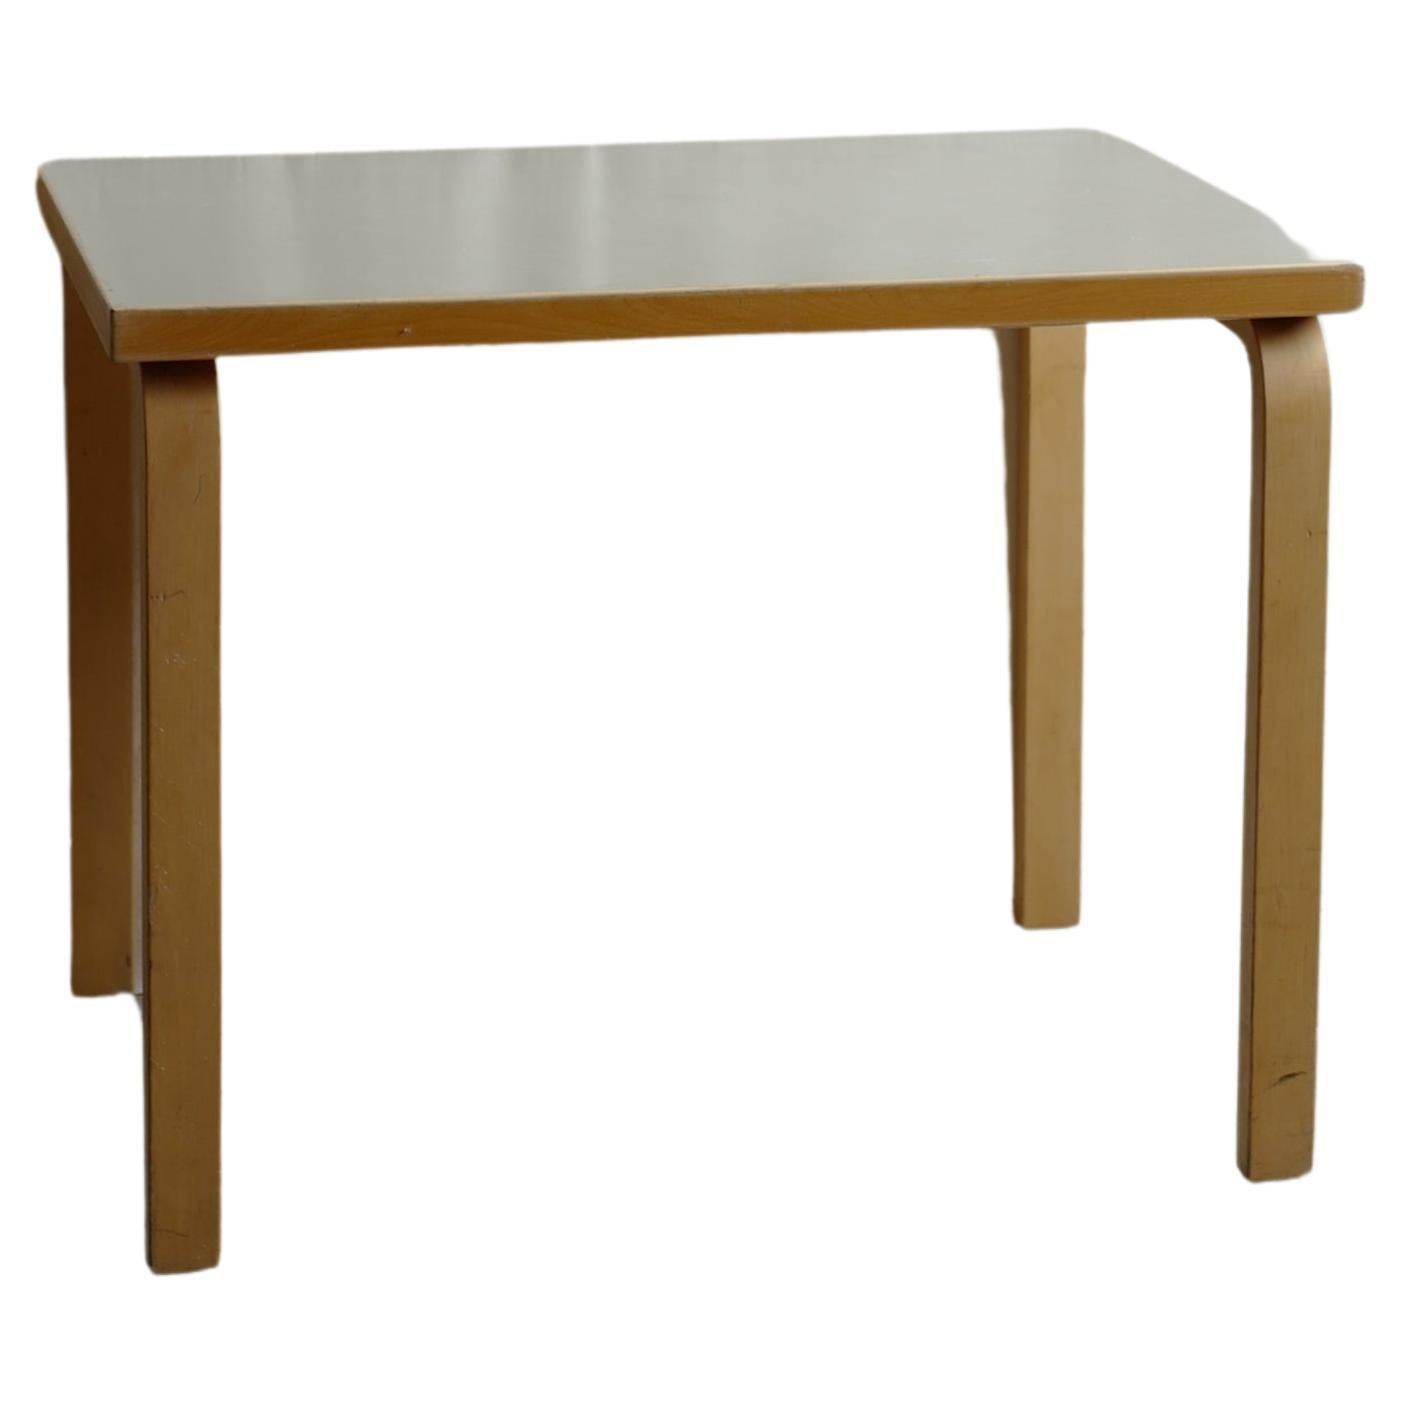 Table en linoléum gris alvar aalto des années 50 